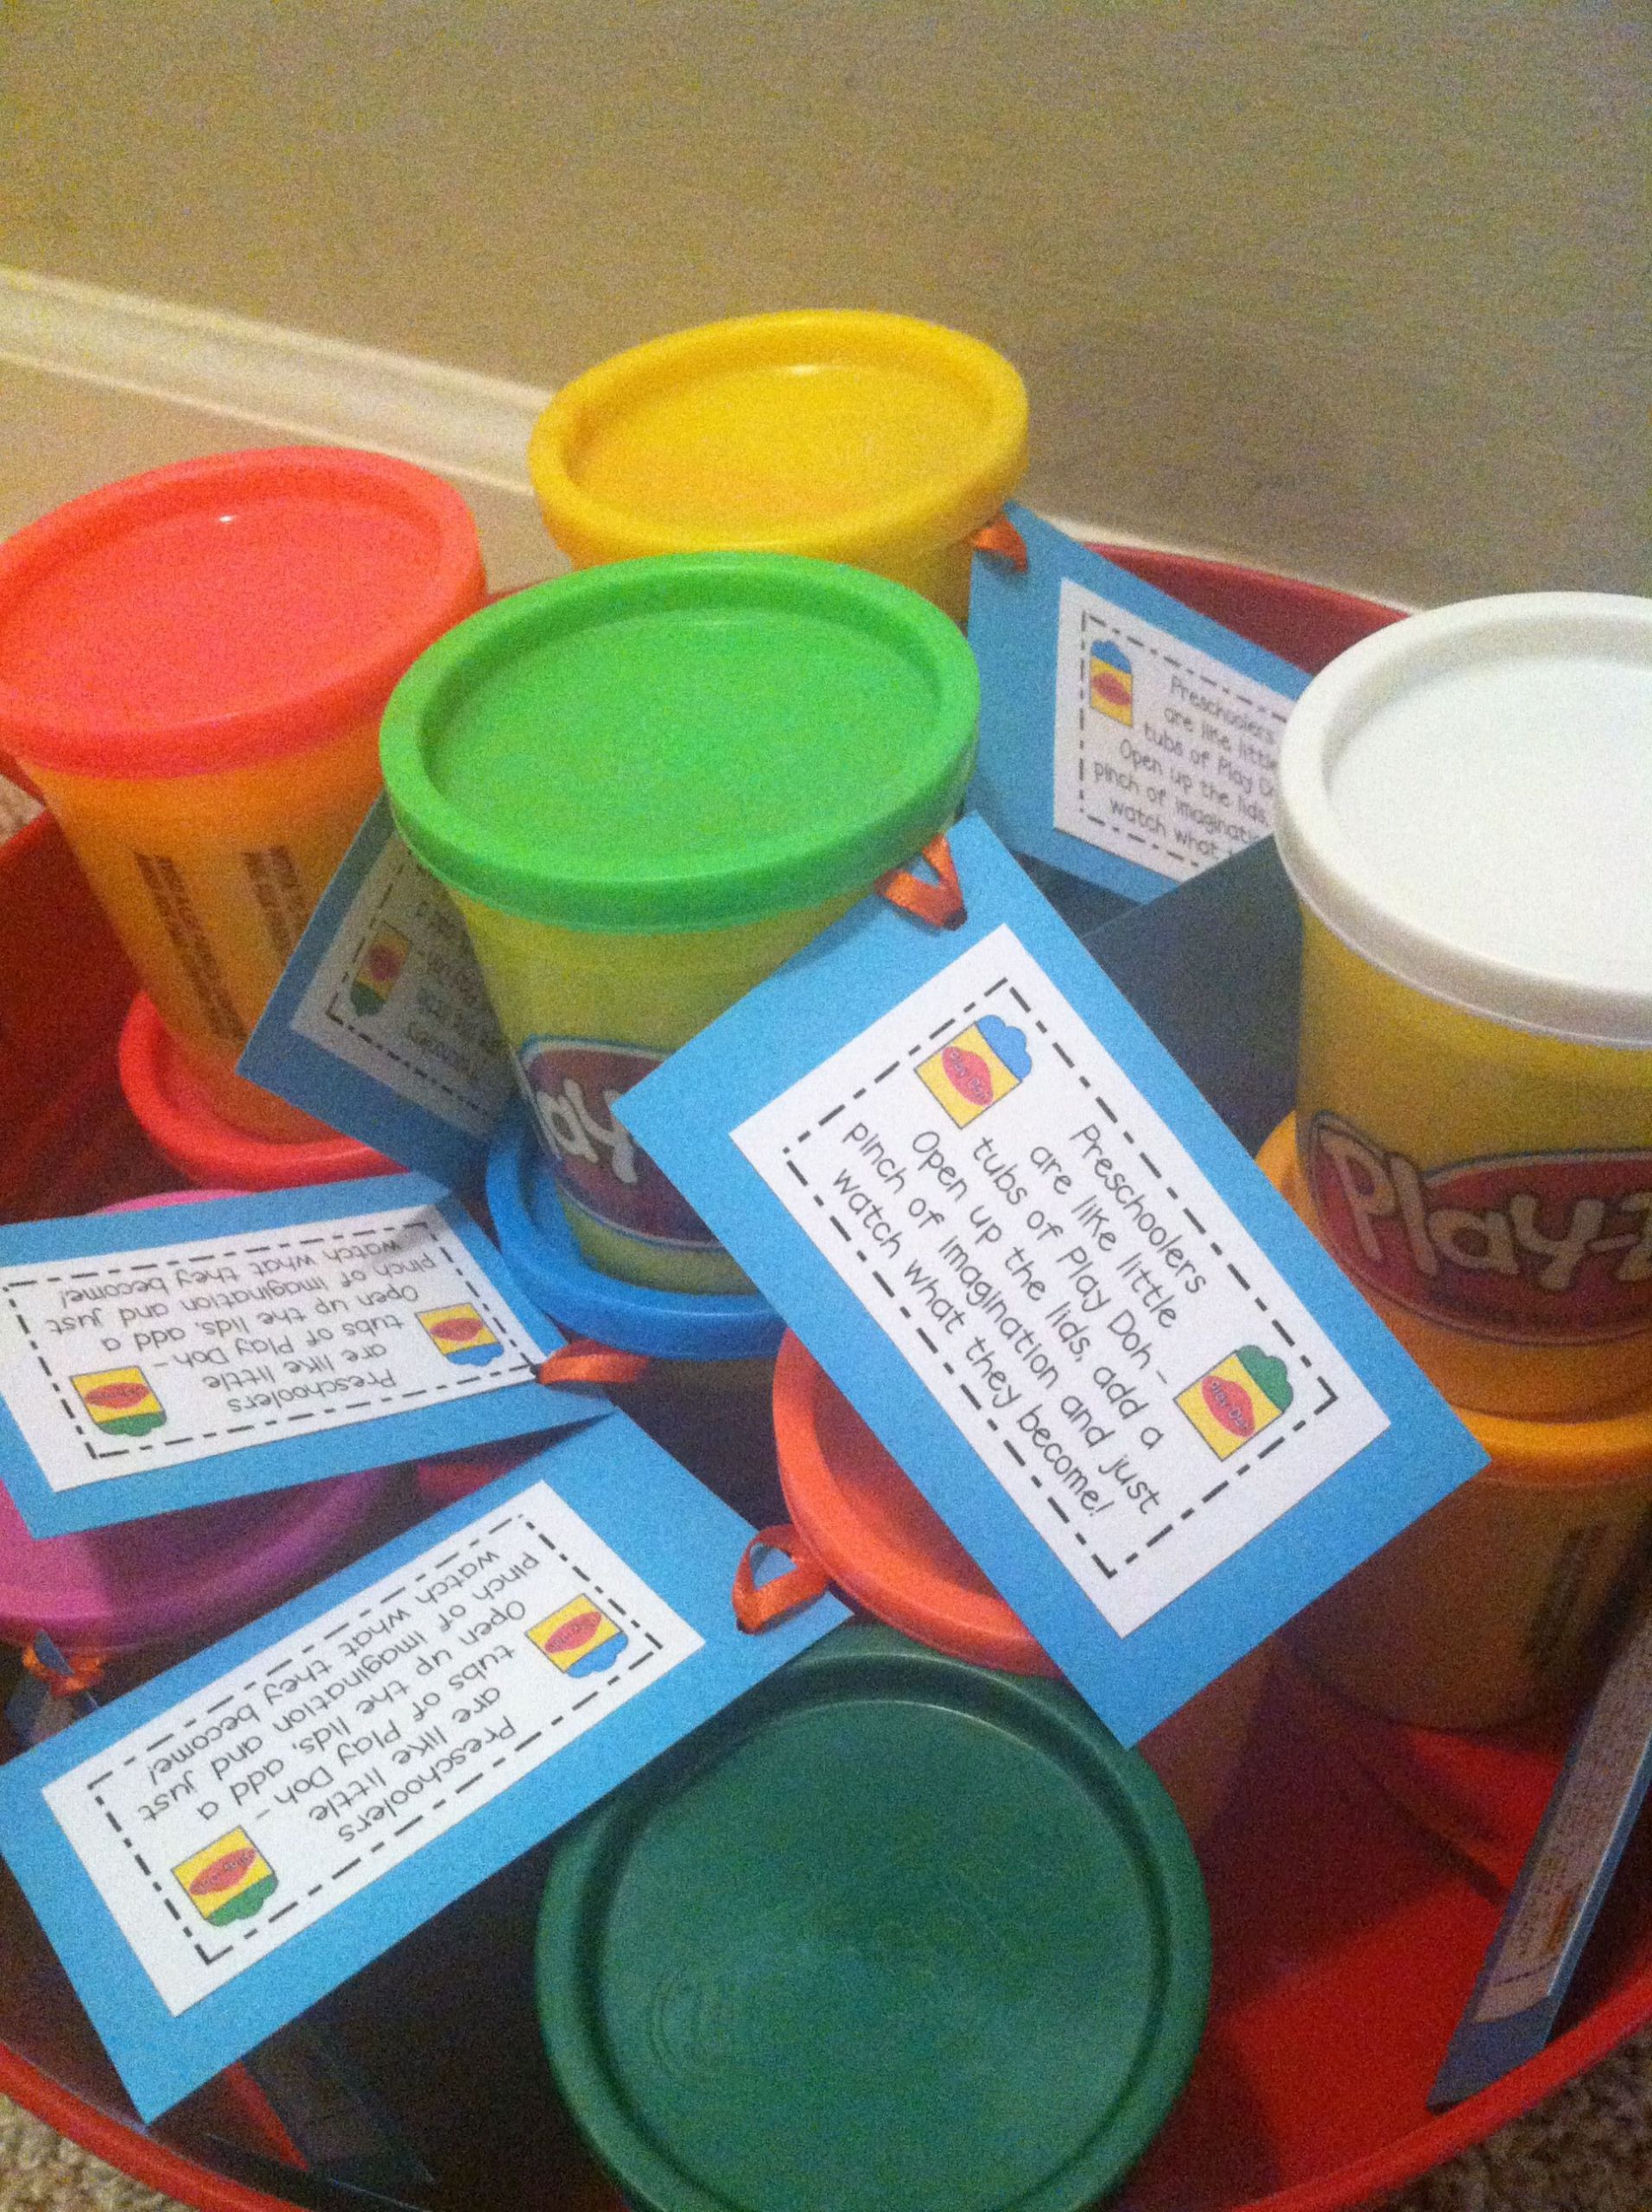 Gift Ideas For Kindergarten Students
 Open House Gift Idea Cute back to school preschool t